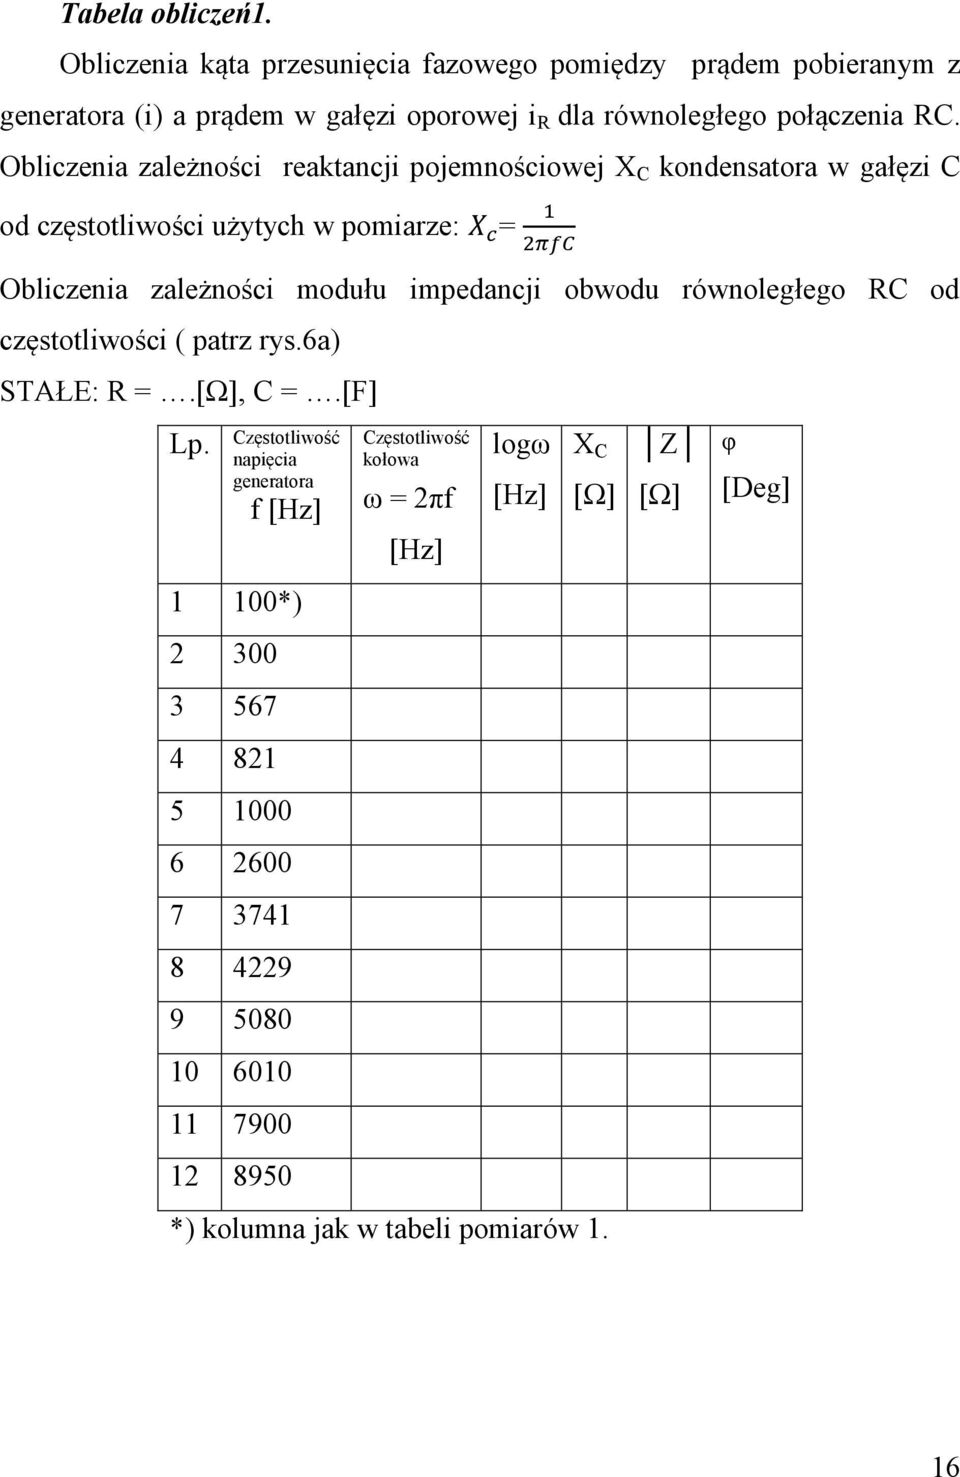 Obliczenia zależności reaktancji pojemnościowej X C kondensatora w gałęzi C od częstotliwości użytych w pomiarze: = Obliczenia zależności modułu impedancji